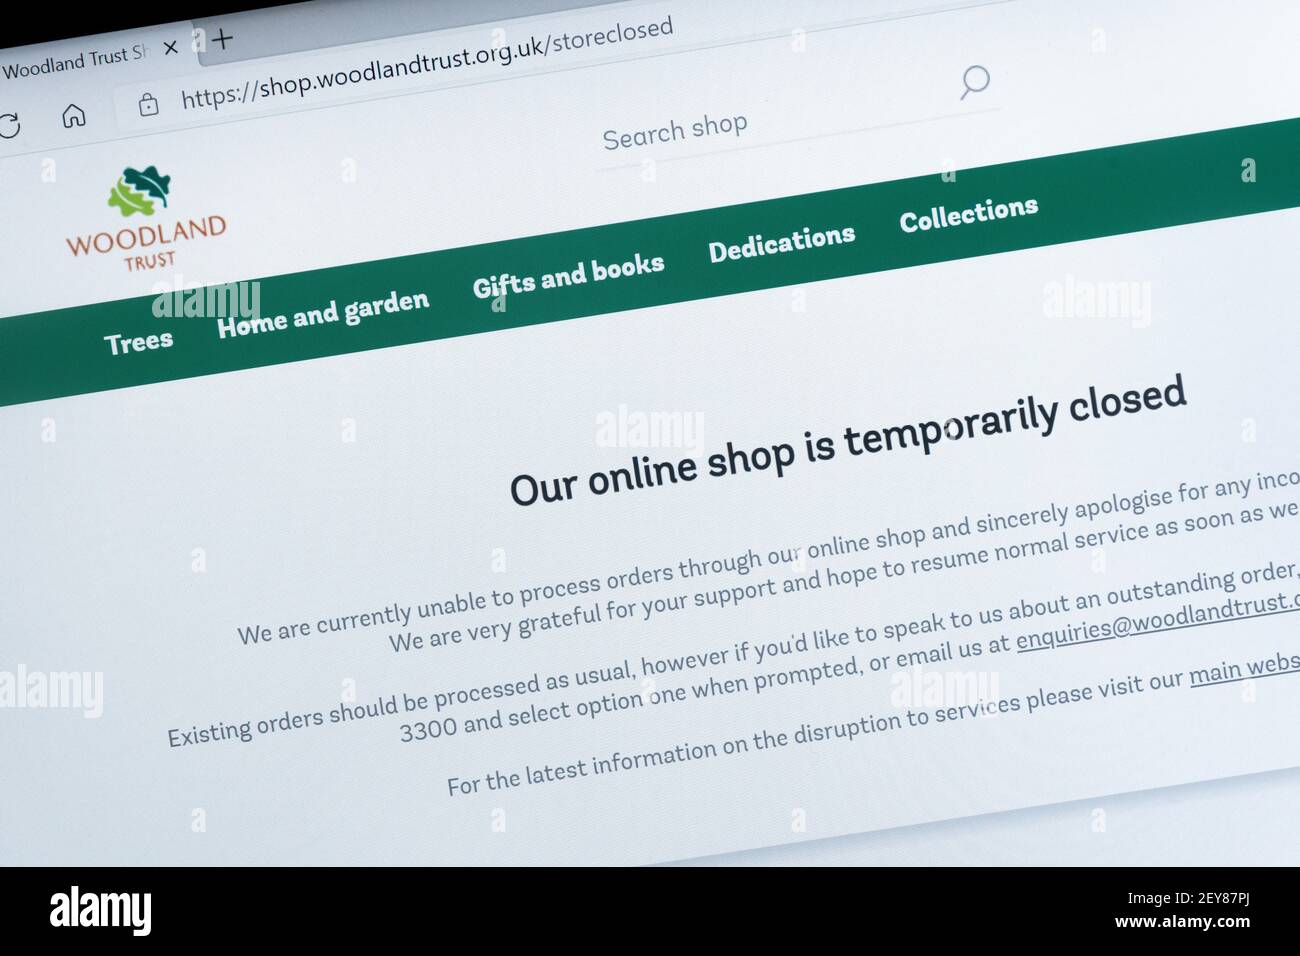 Woodland Trust site Web après une cyber-attaque majeure avec le message que leur boutique en ligne est temporairement fermée, 2021, Royaume-Uni Banque D'Images